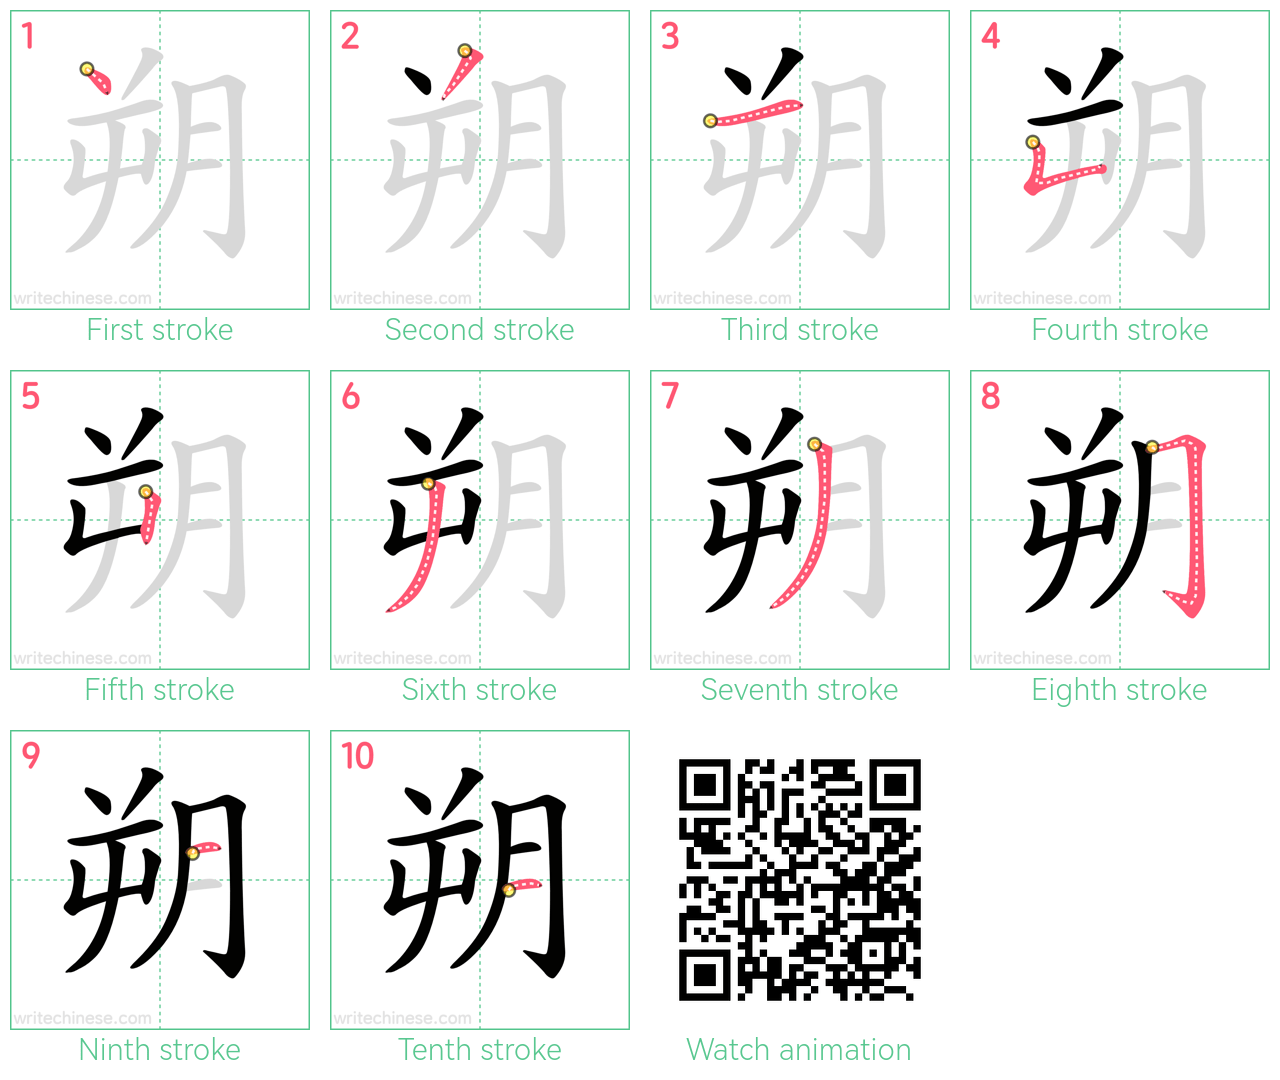 朔 step-by-step stroke order diagrams